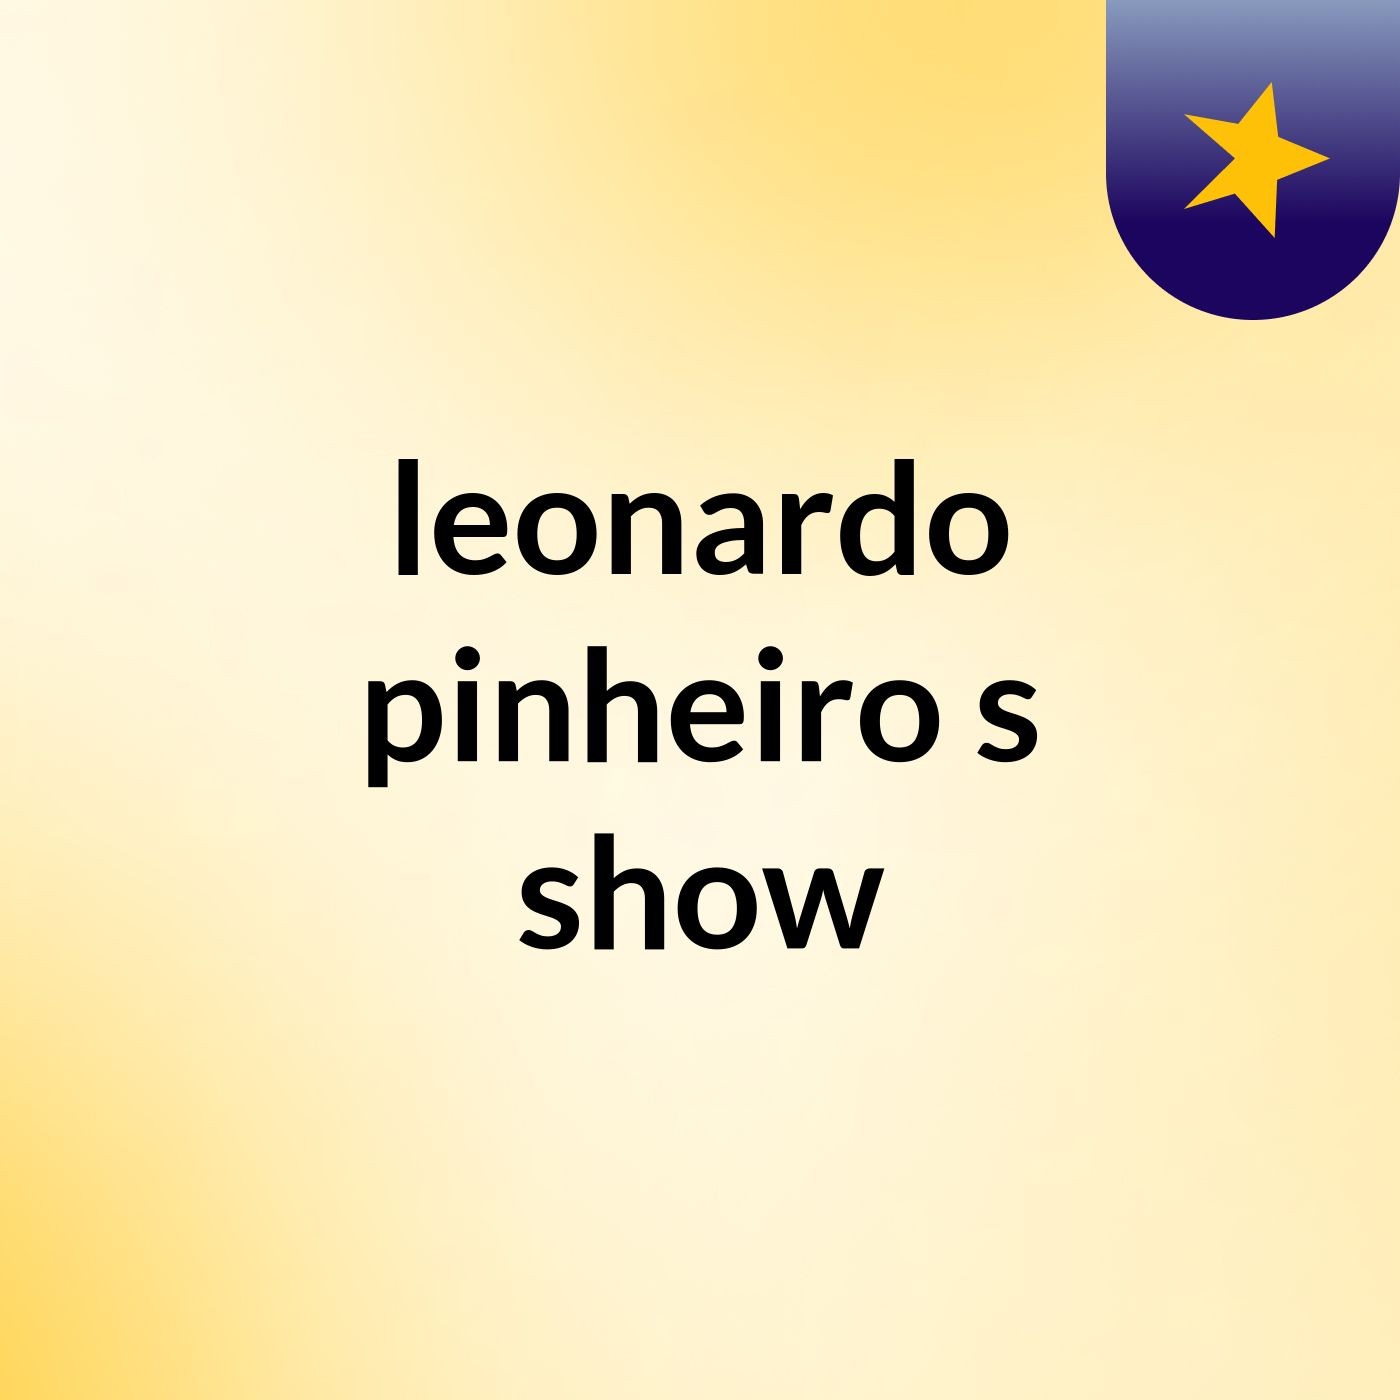 leonardo pinheiro's show